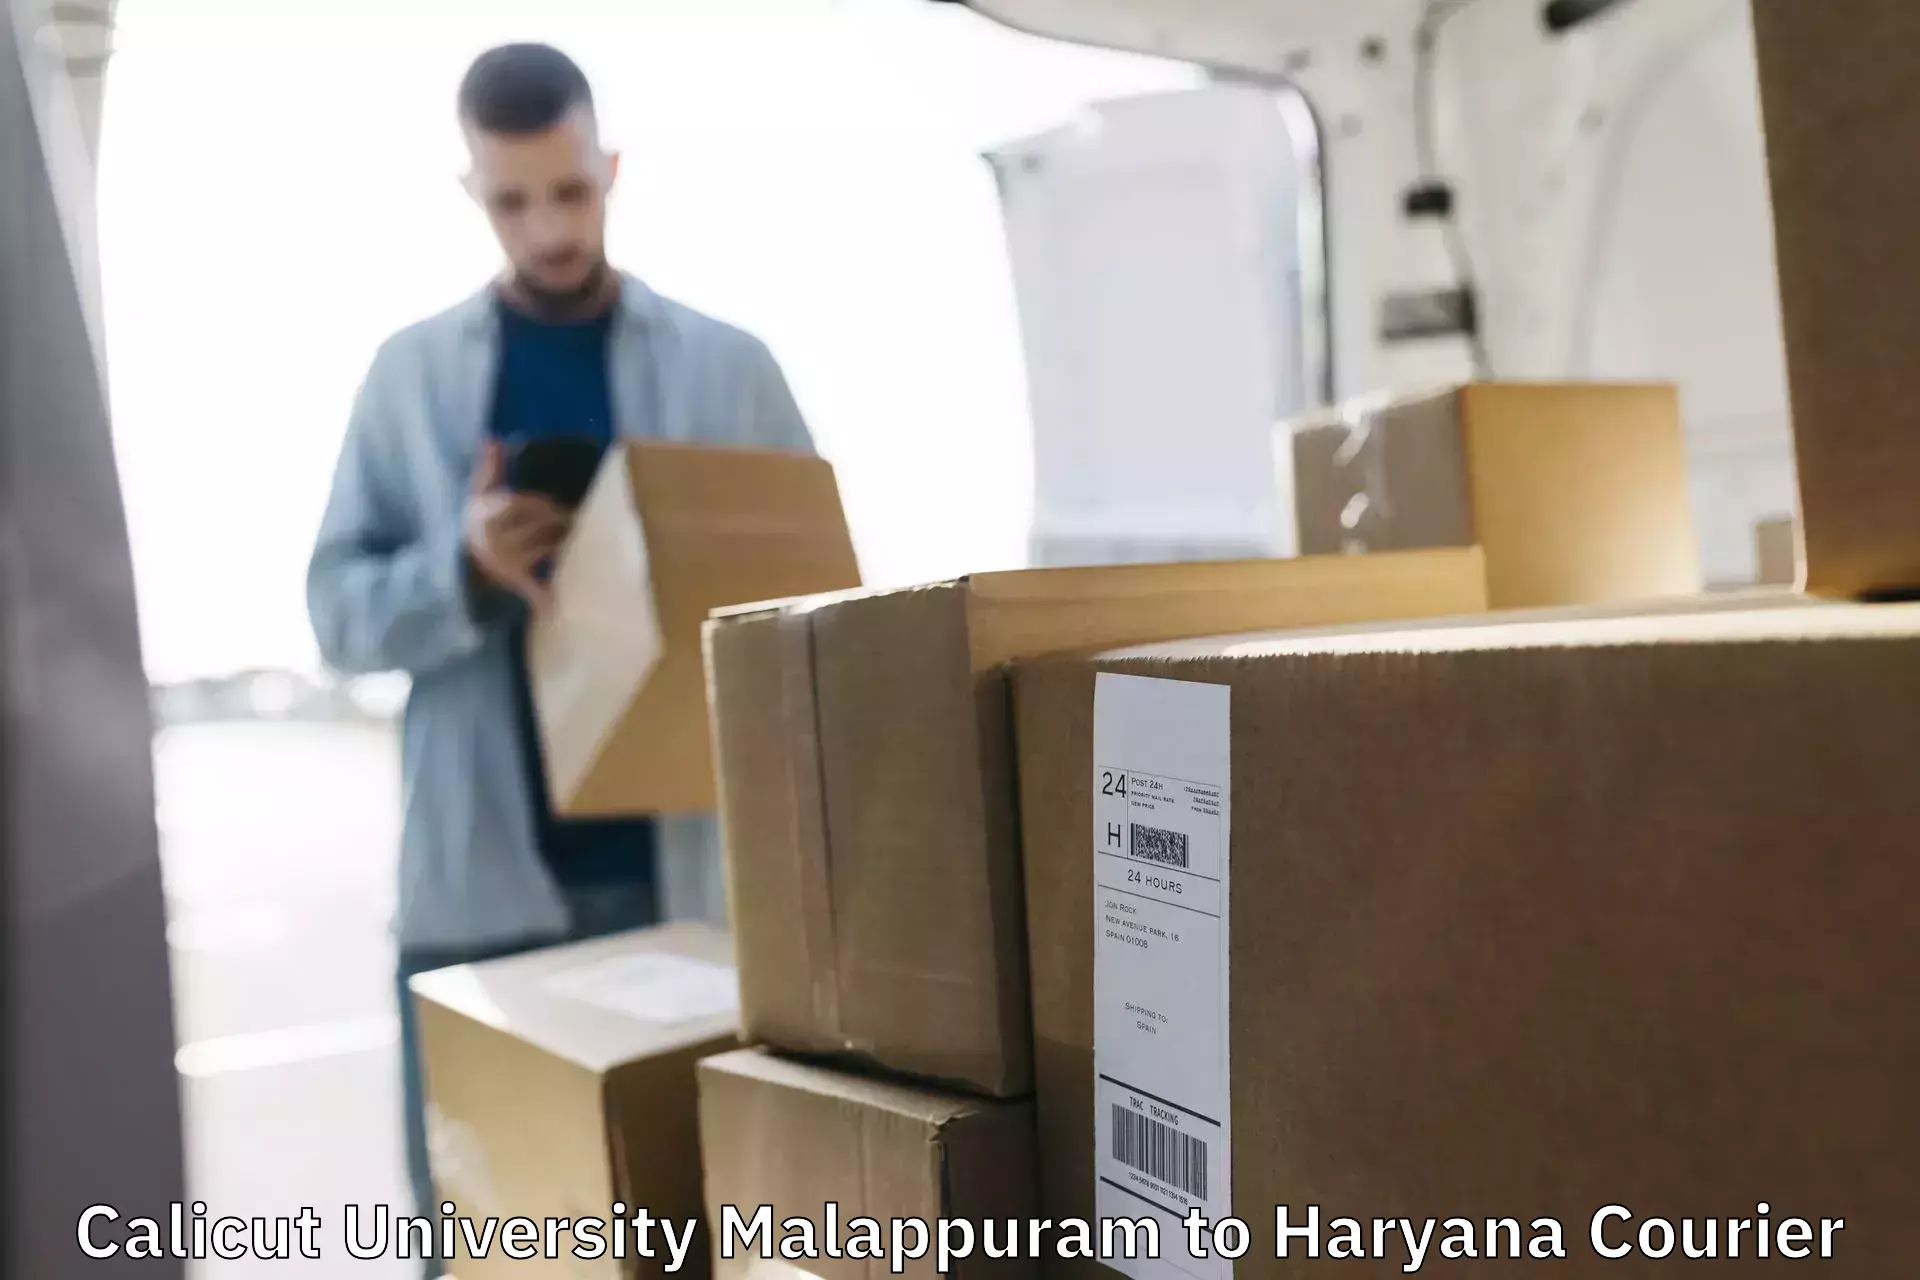 Professional courier handling Calicut University Malappuram to Siwani